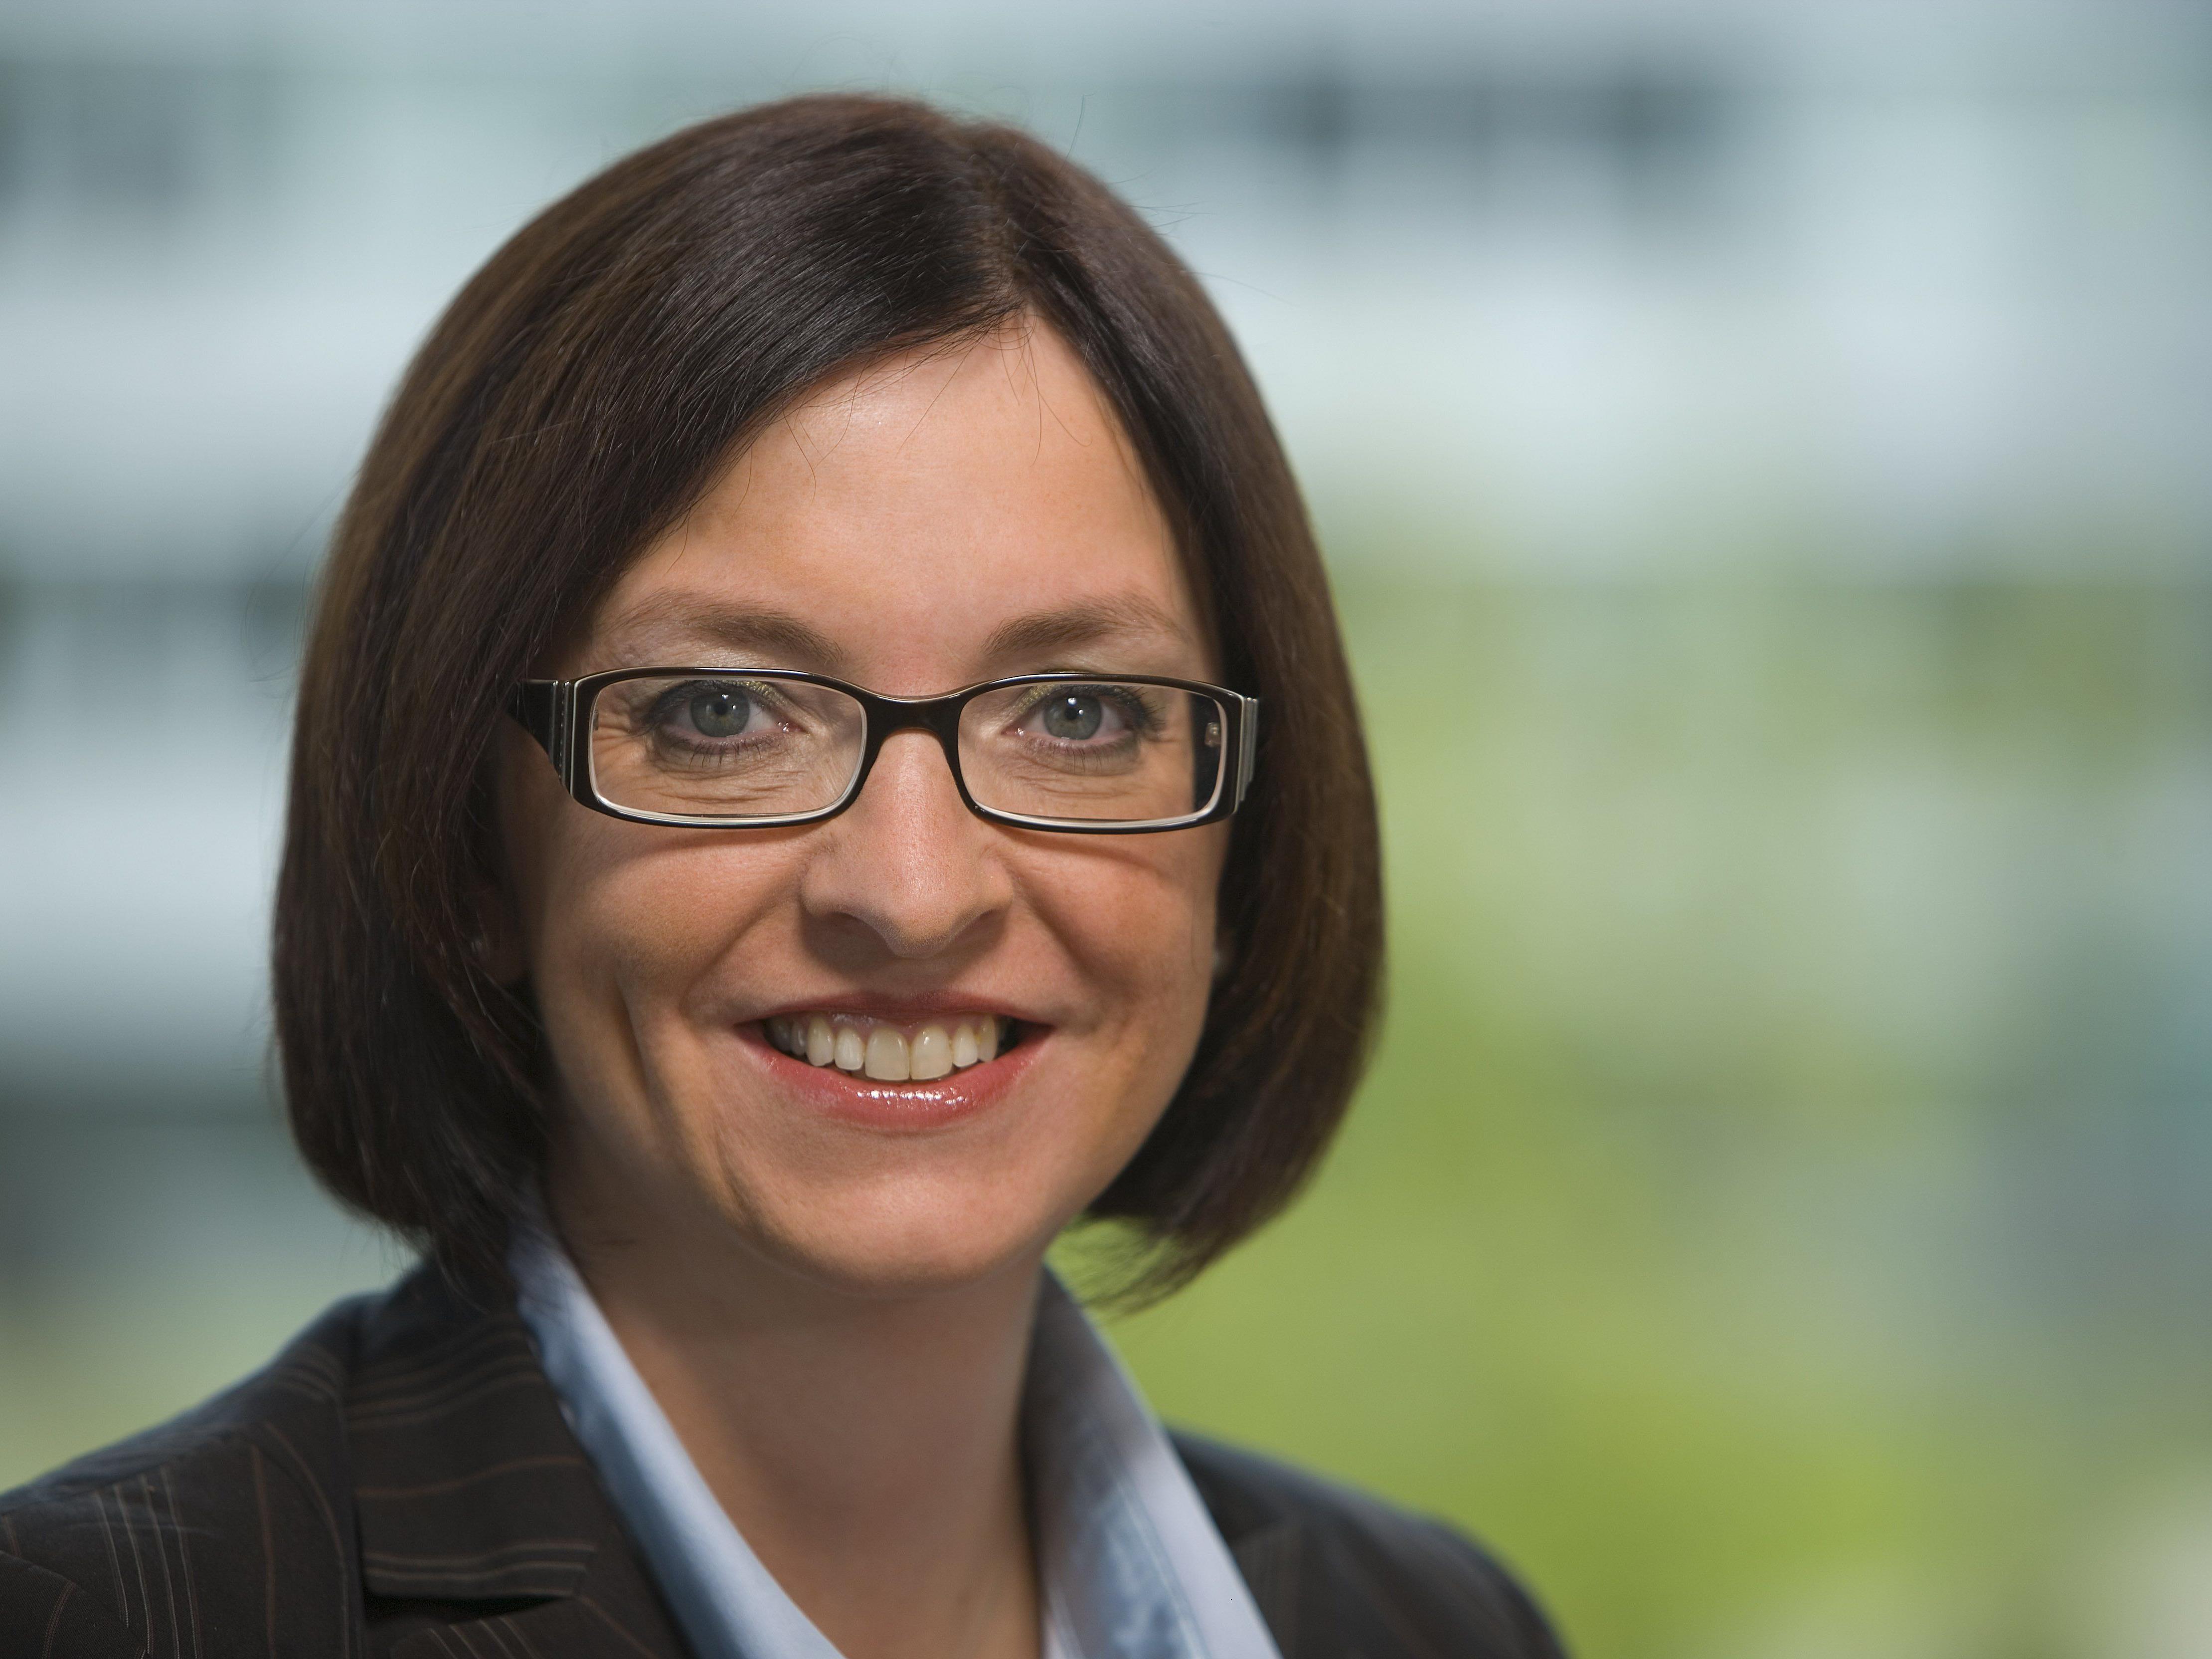 Die 44-jährige Karin Sonnenmoser ist die neue Finanzchefin der Zumtobel AG.